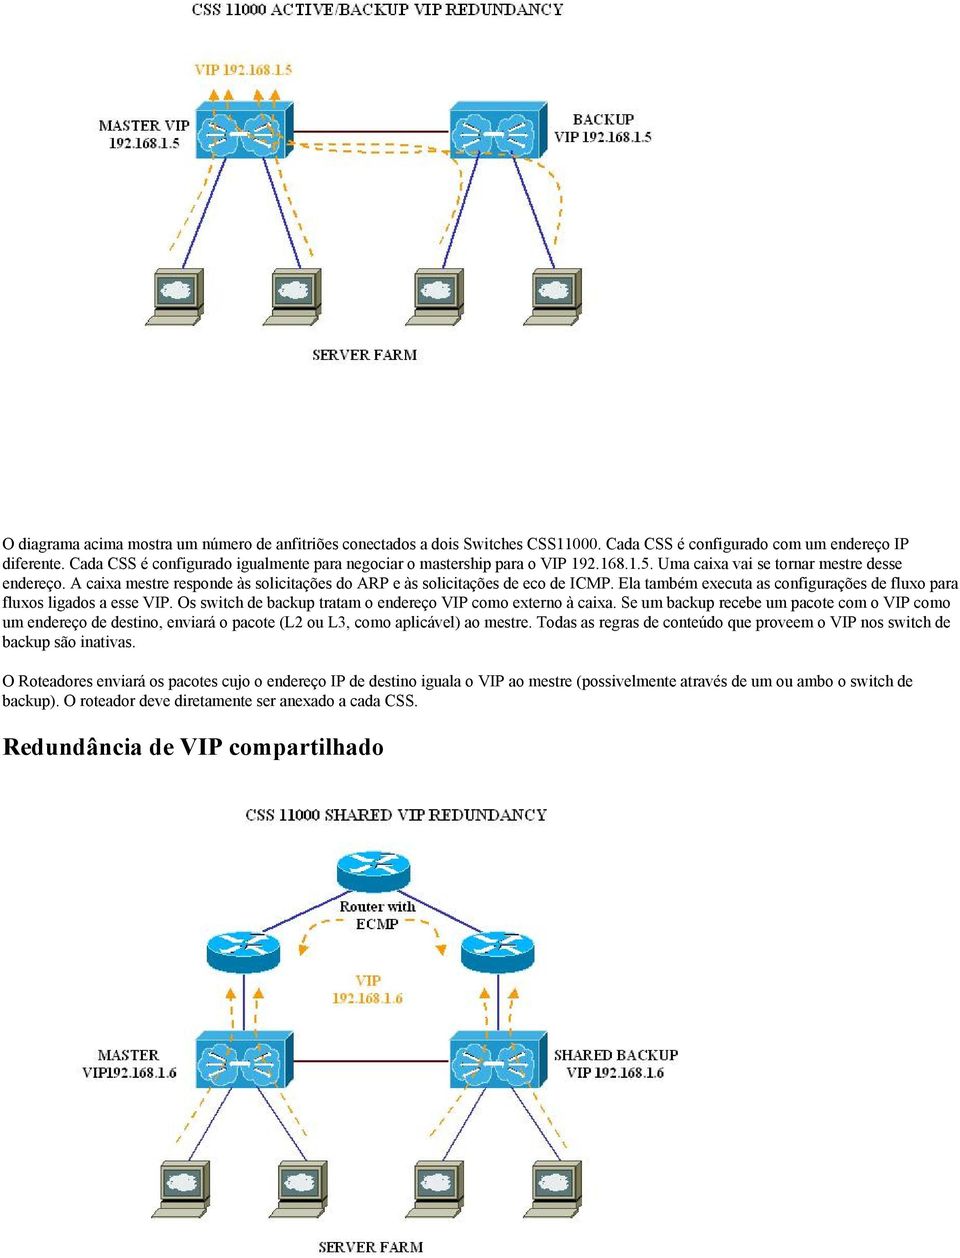 A caixa mestre responde às solicitações do ARP e às solicitações de eco de ICMP. Ela também executa as configurações de fluxo para fluxos ligados a esse VIP.